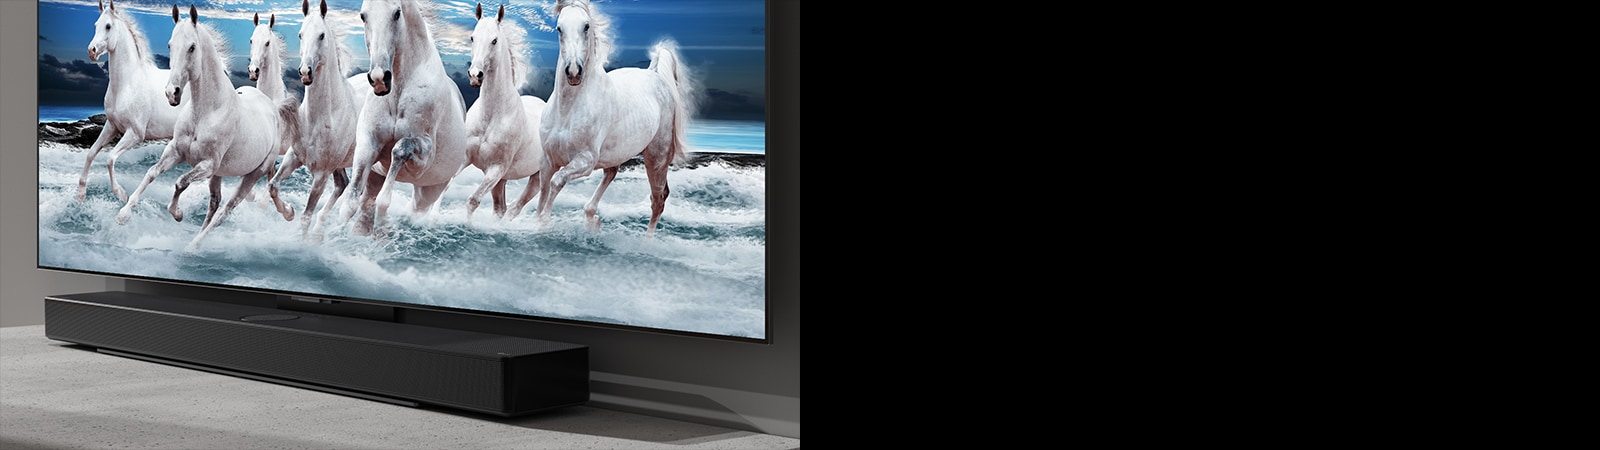 Soundbar i telewizor stoją na białym stole. Na ekranie telewizora widać 7 białych koni.